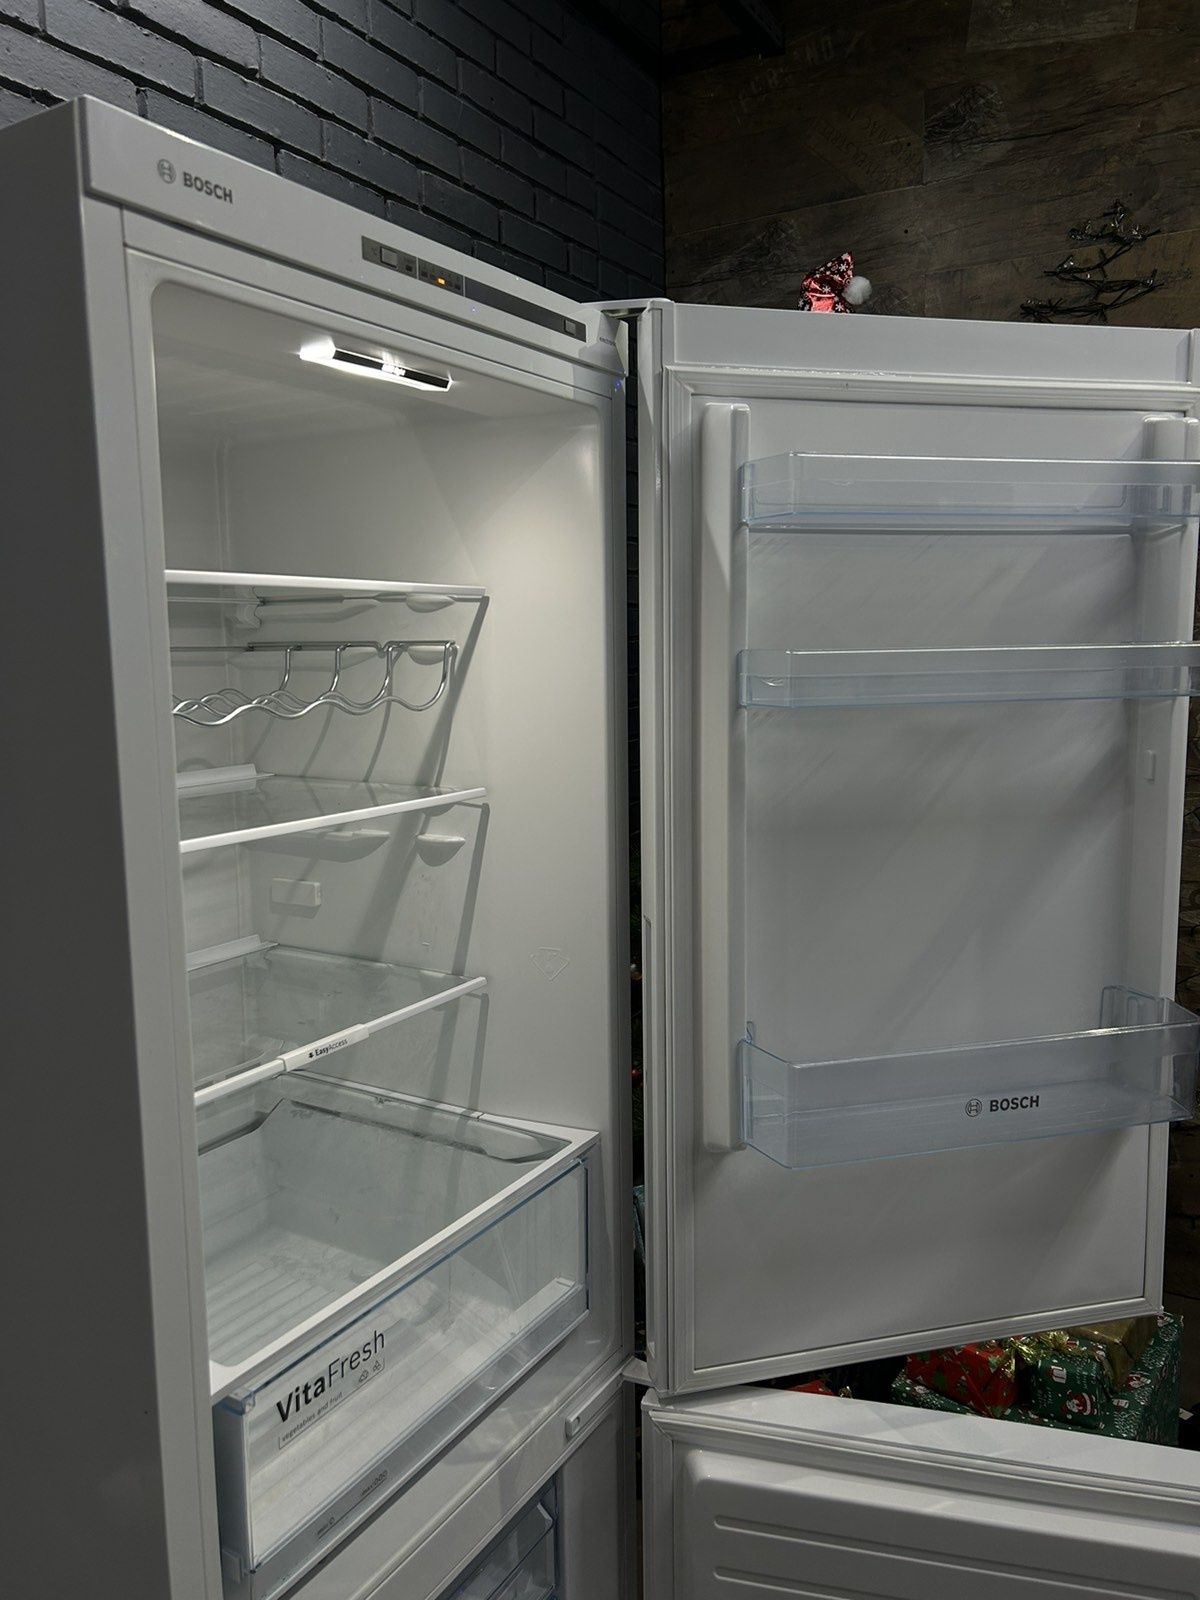 Продам холодильник Bosch sh688fg в дуже гарному стані .